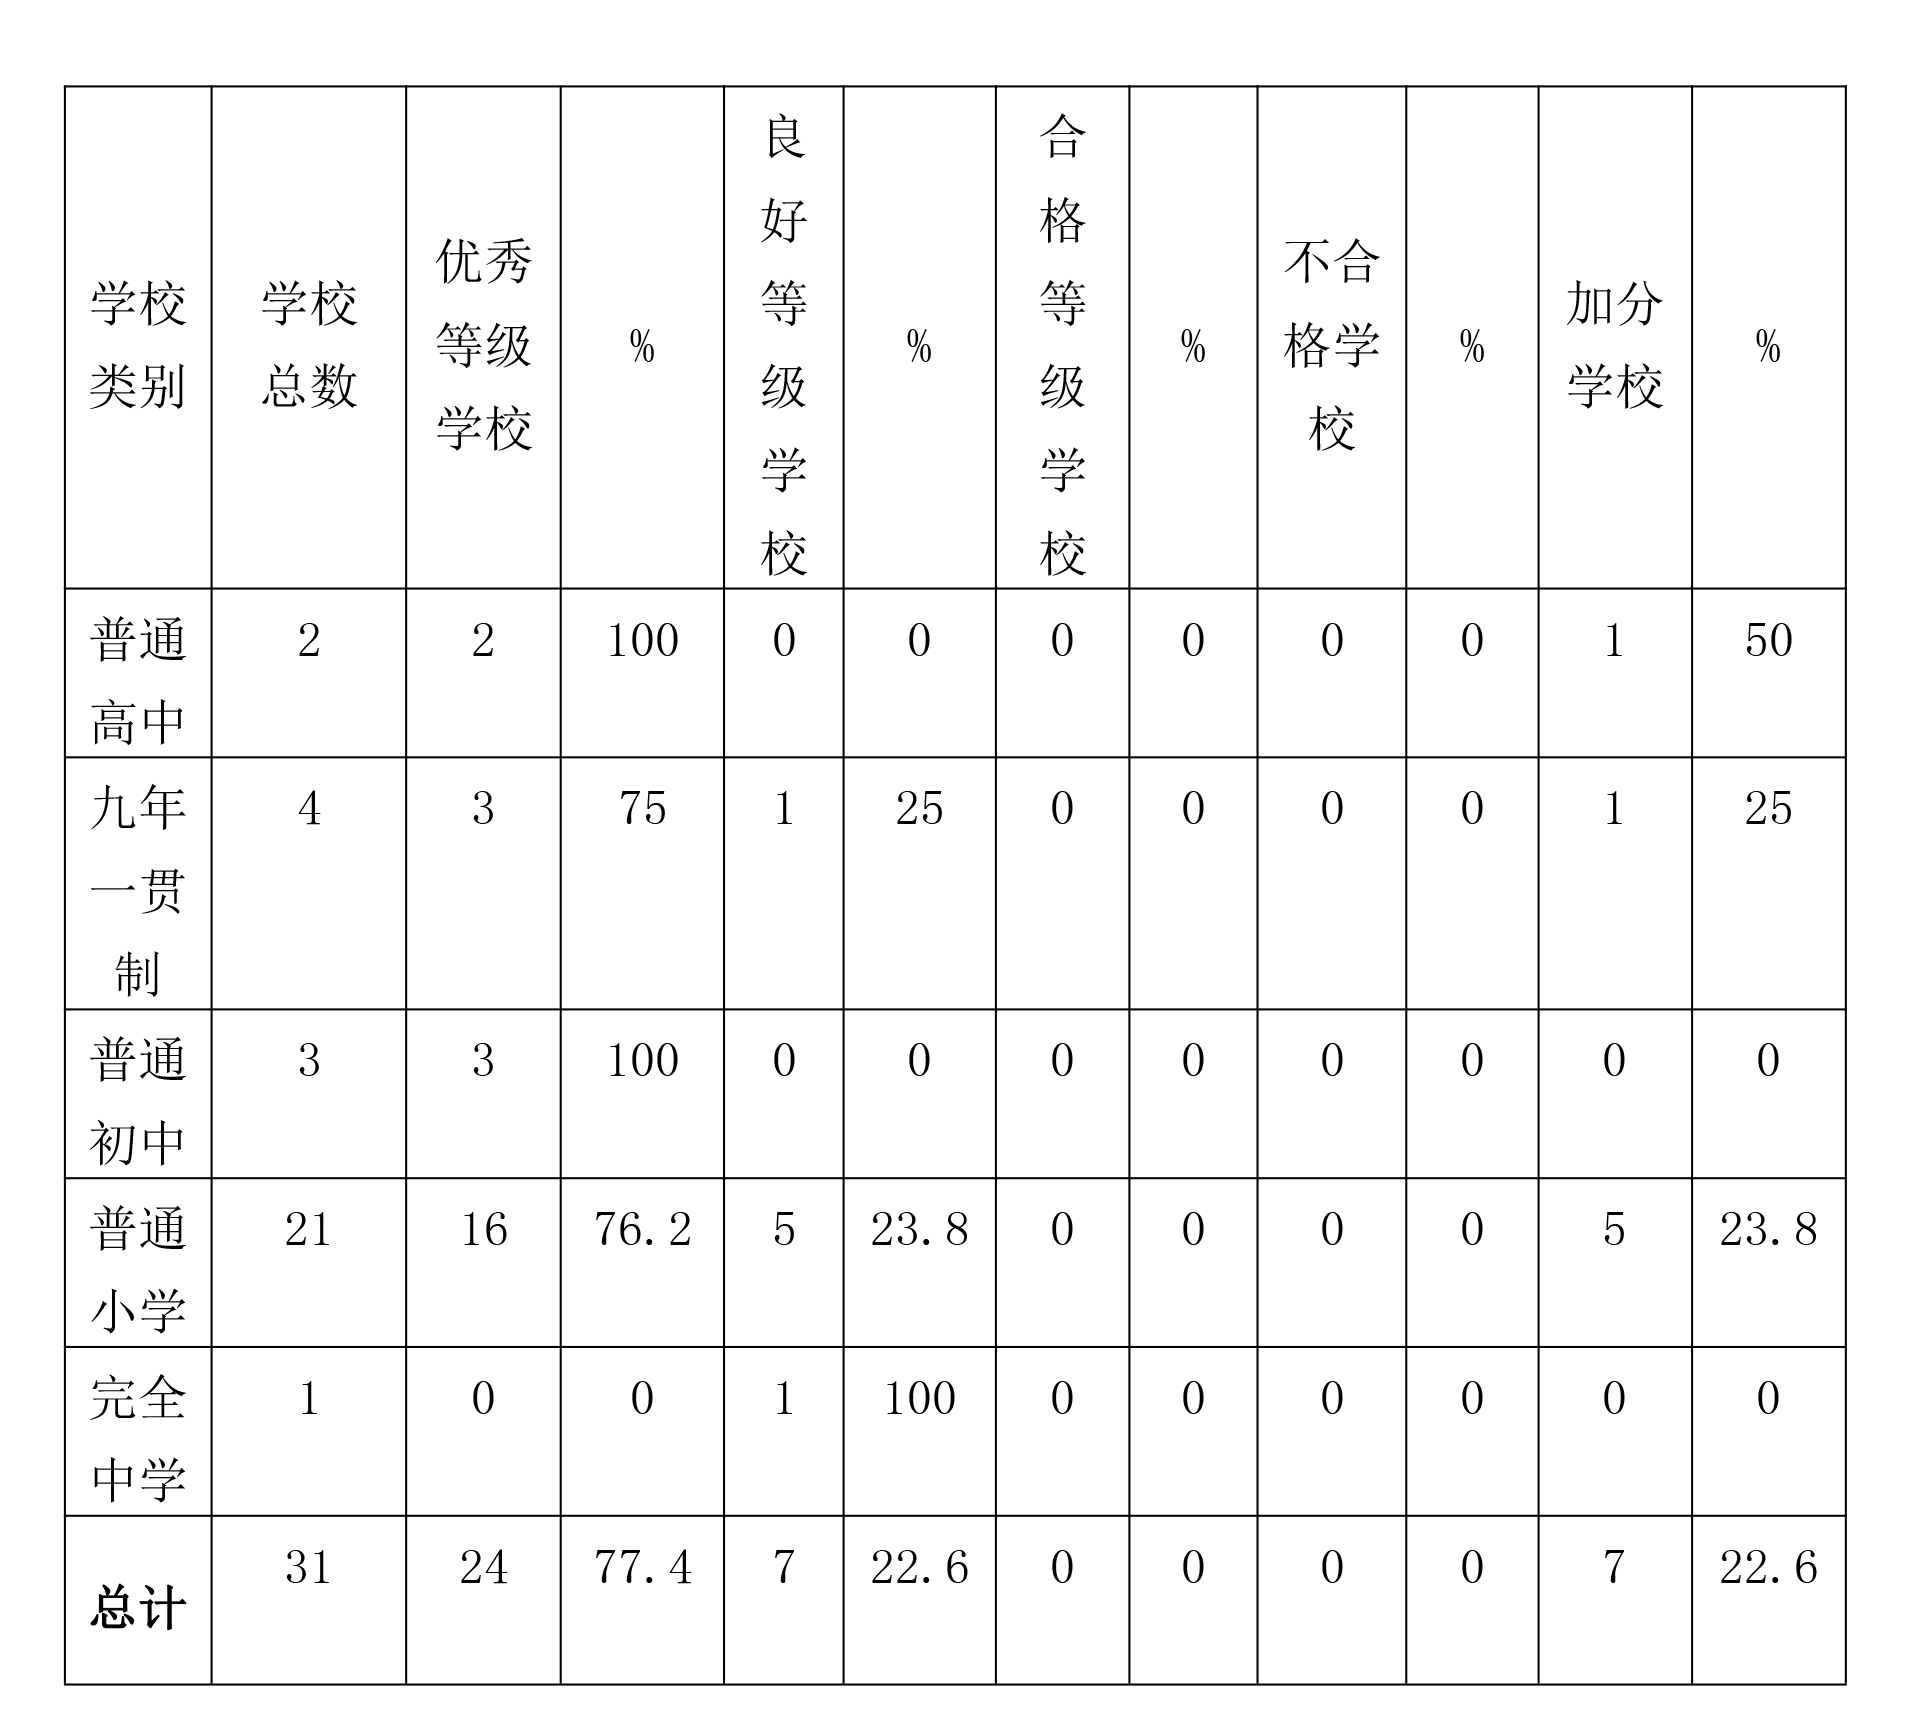 铁岭县学校体育工作评估审核结果报告